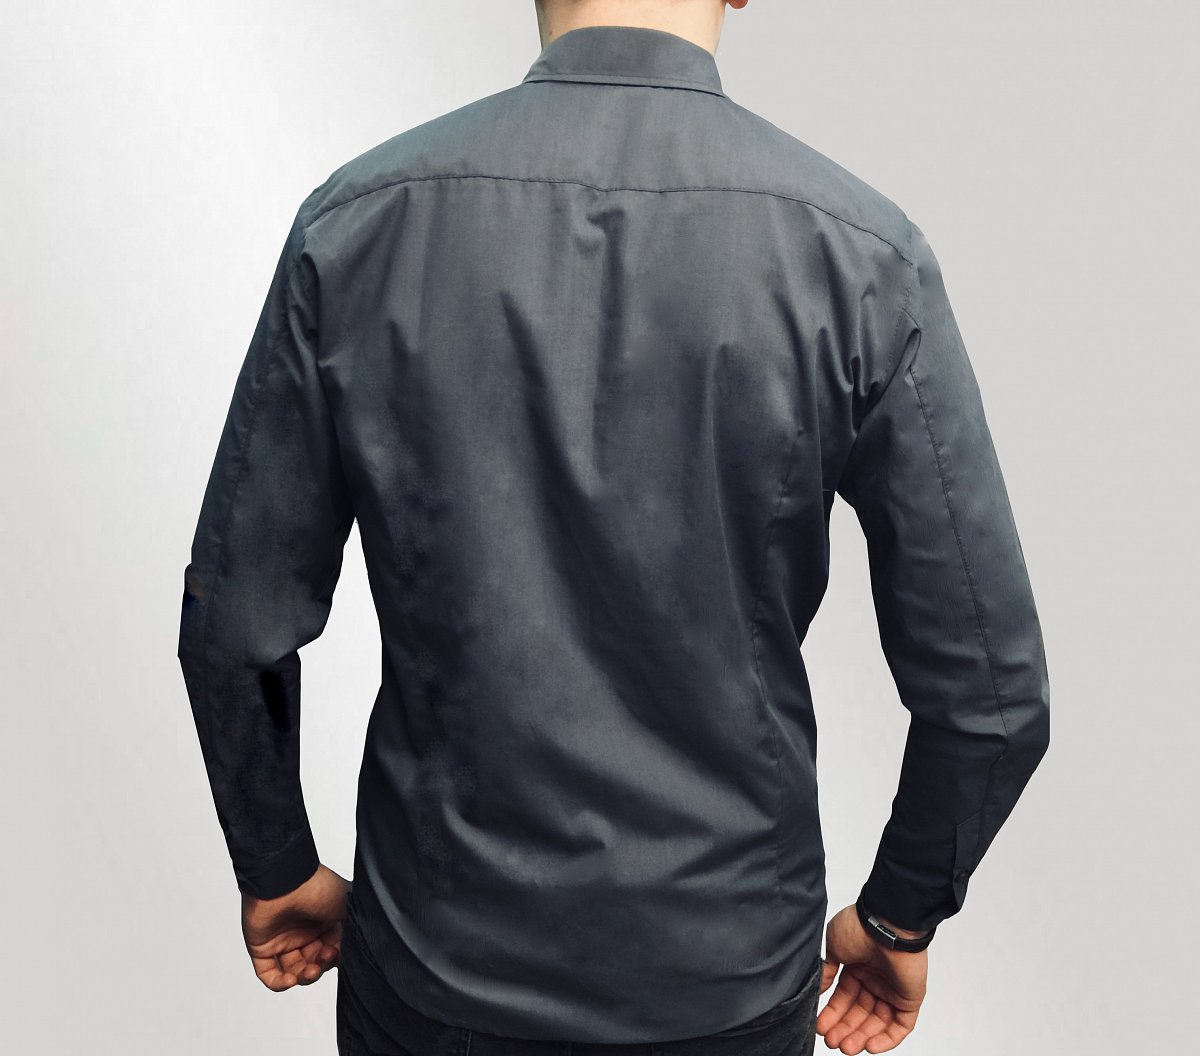 Пошив рубашек - пример модели мужская рубашка с брендированием